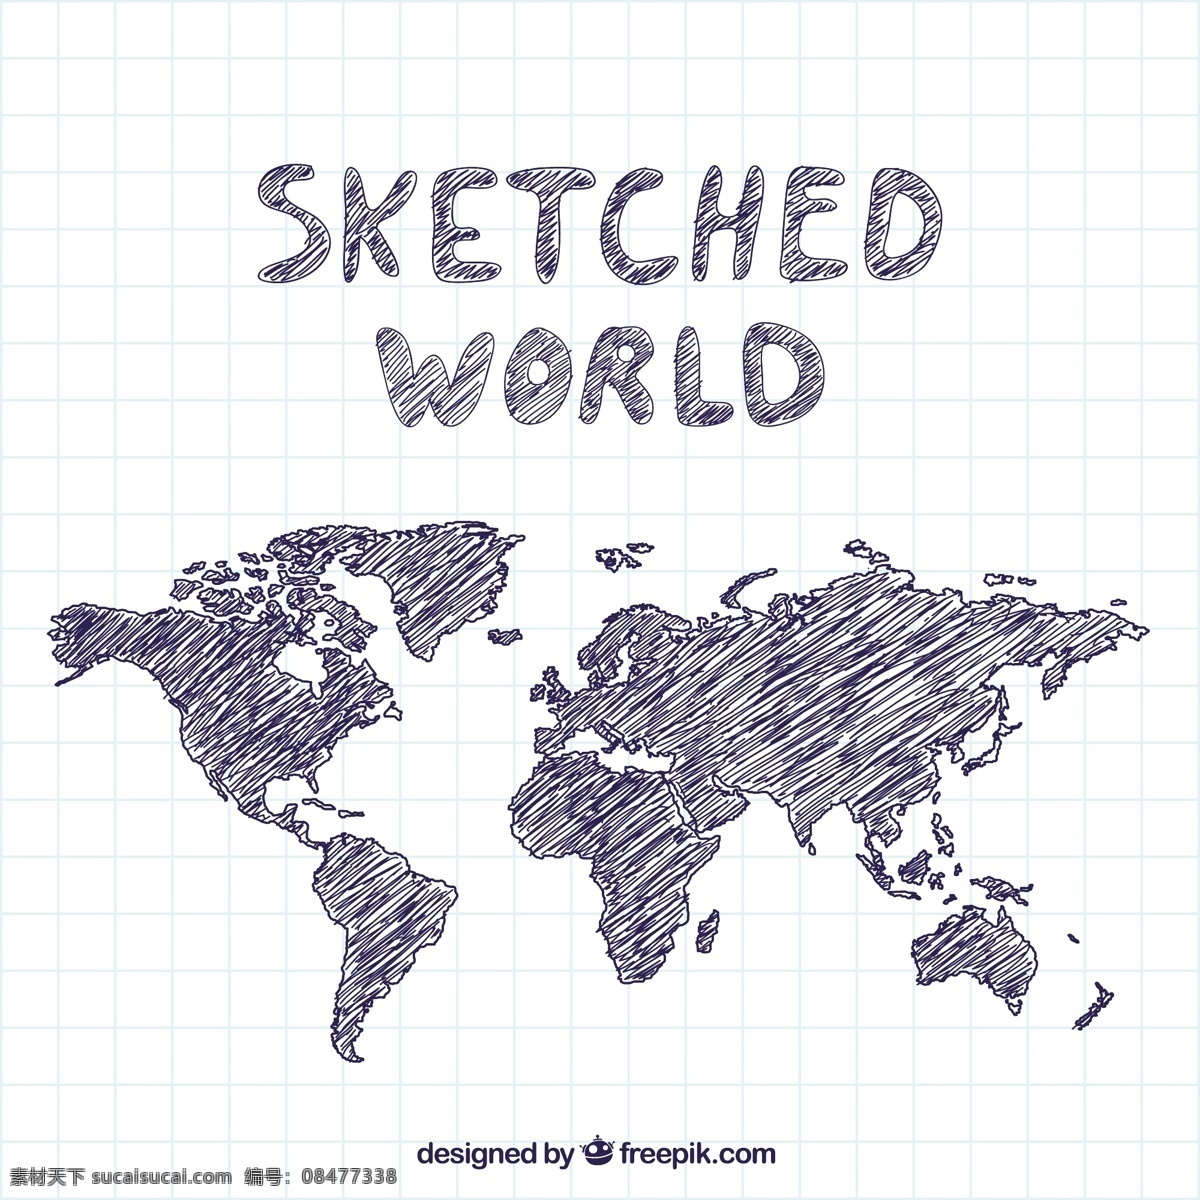 描绘的世界 地图 世界 地球 世界地图 国际 在世界范围内 粗略勾勒 白色